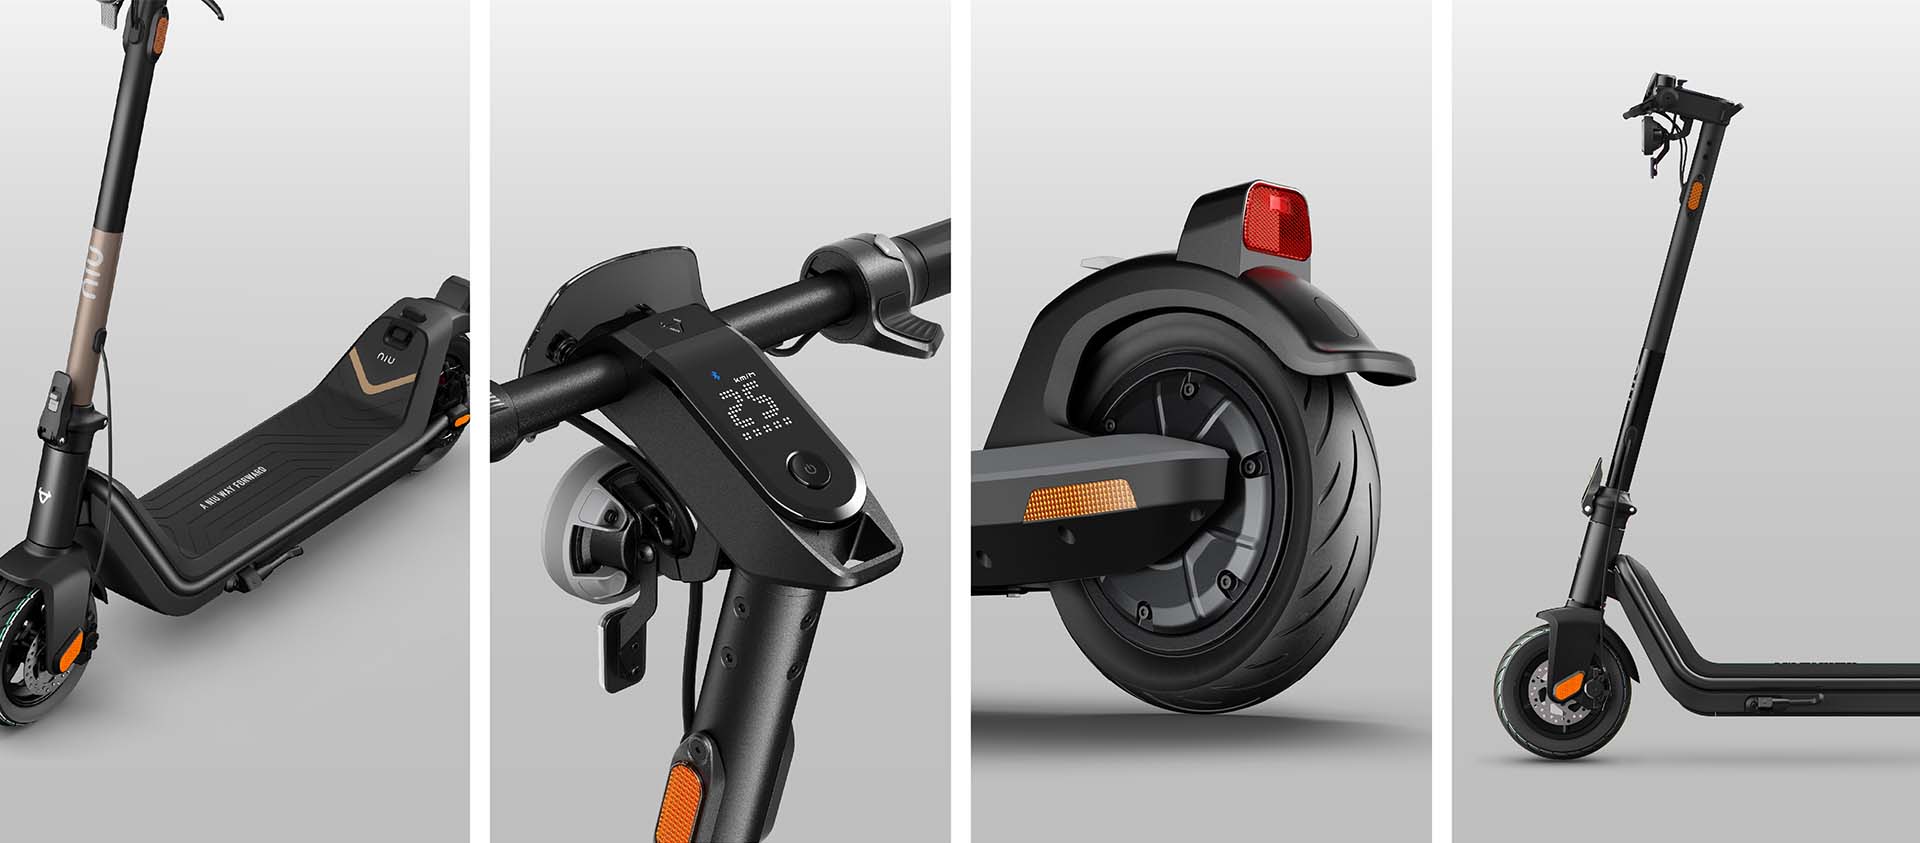 NIU design: Top 4 ergonomic kick scooter features